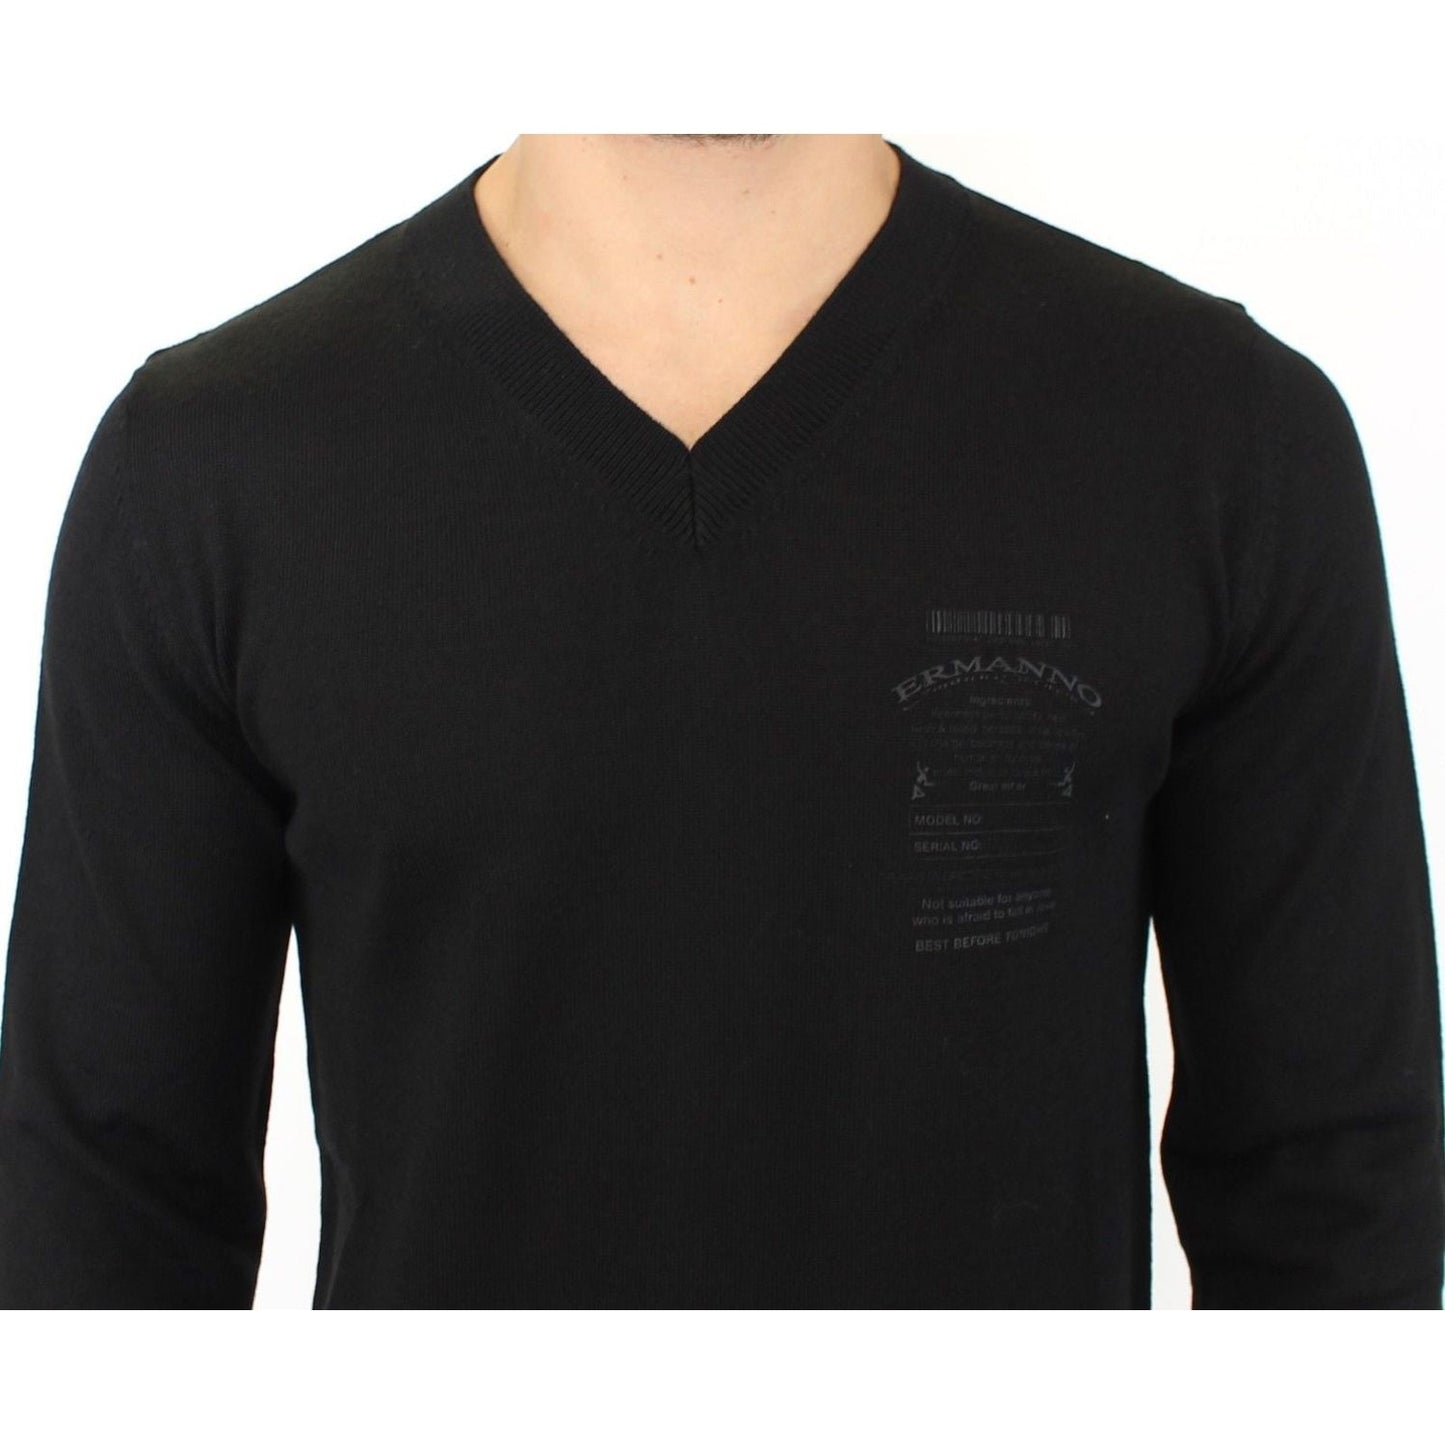 Ermanno Scervino Elegant Black V-Neck Wool Blend Sweater black-wool-blend-v-neck-pullover-sweater 37457-black-wool-blend-v-neck-pullover-sweater-4.jpg